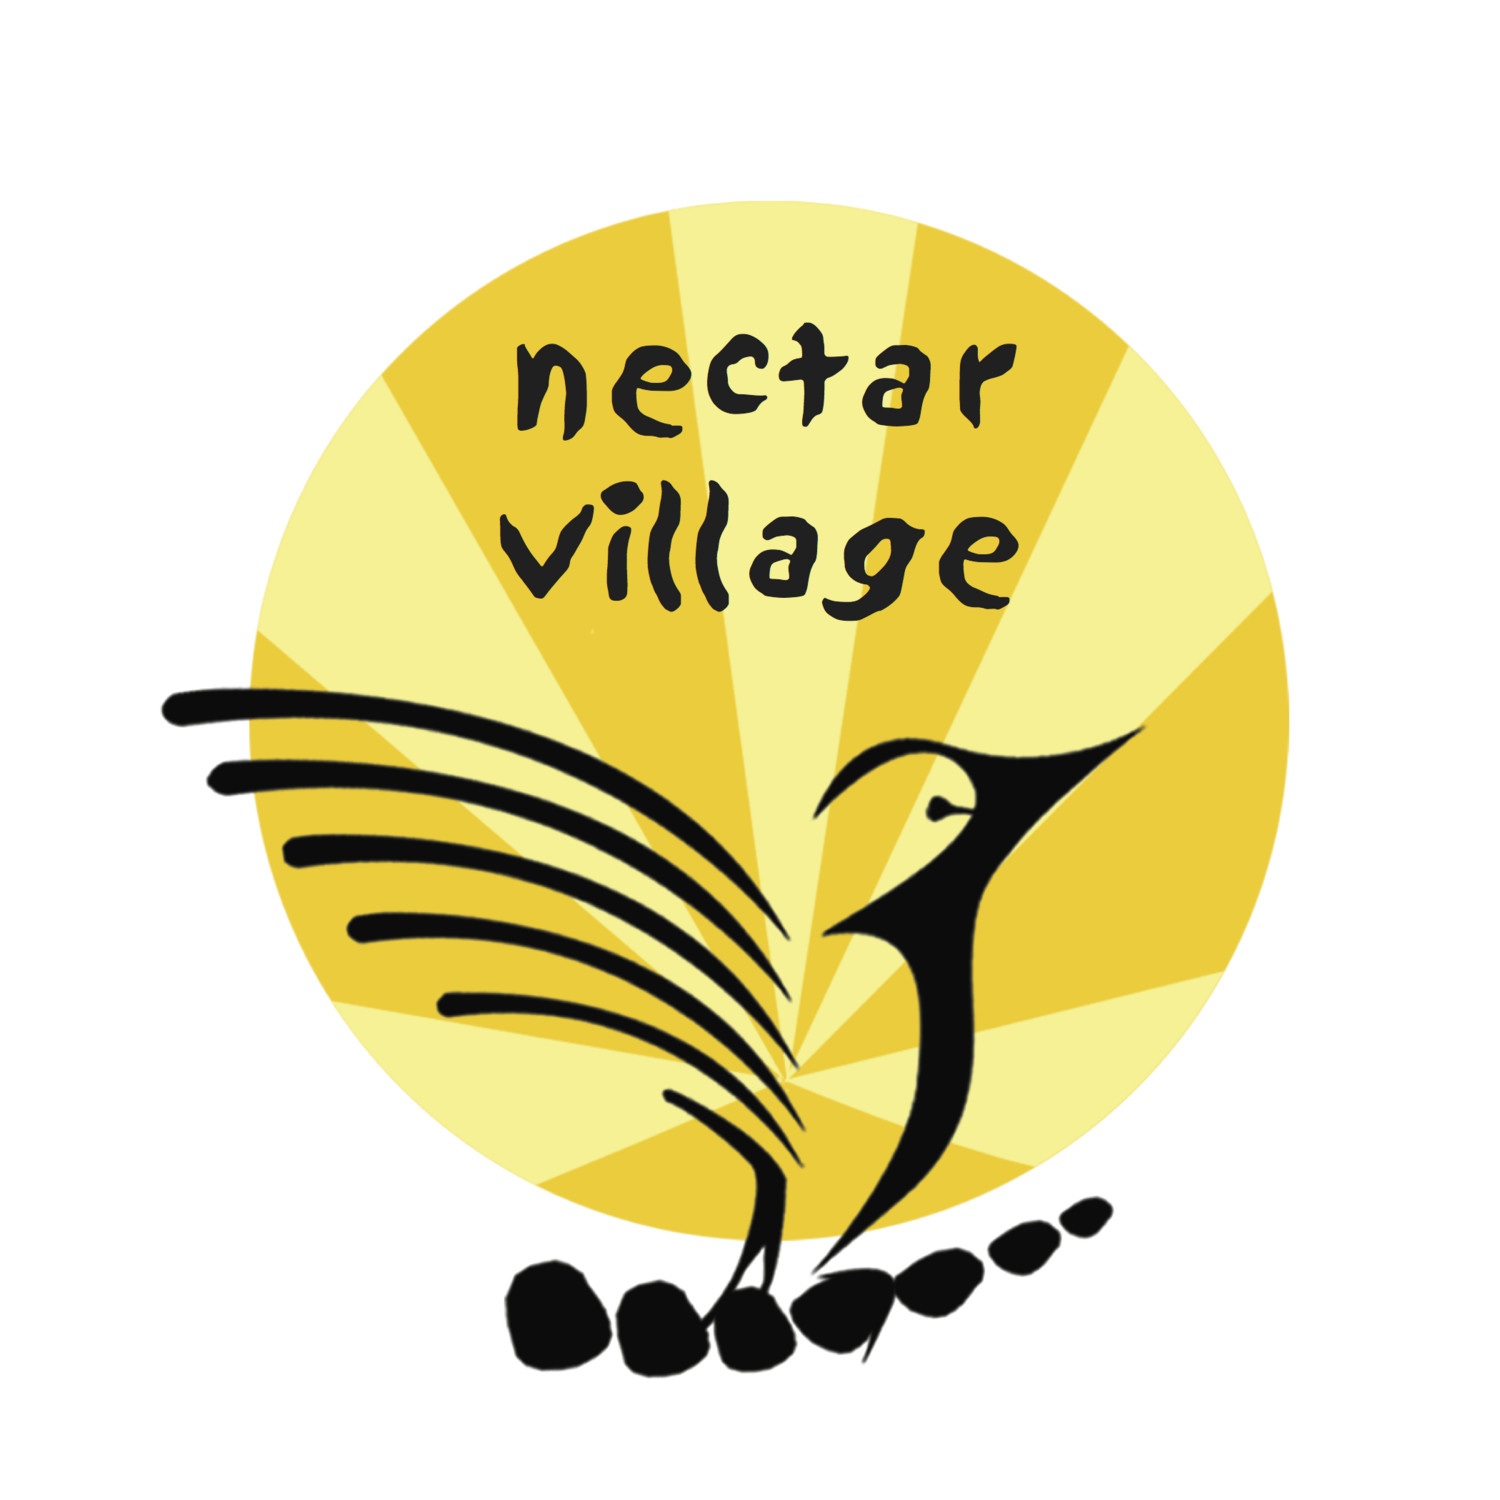 Nectar Village